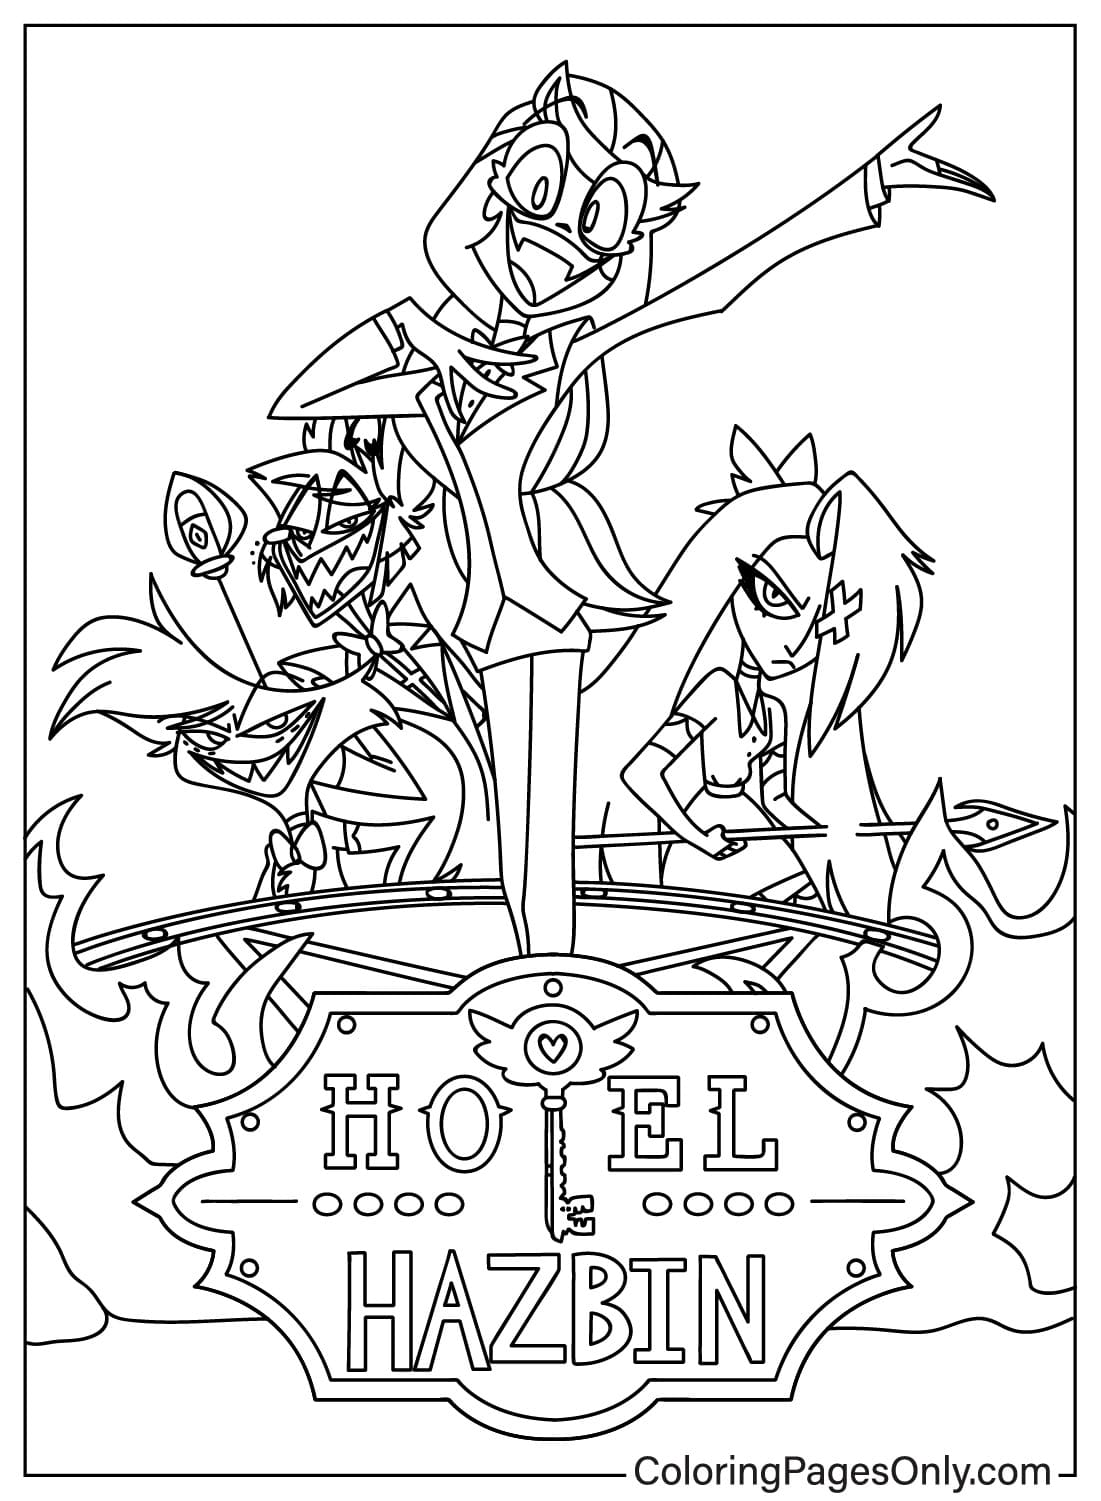 Página para colorir do Hazbin Hotel grátis no Hazbin Hotel